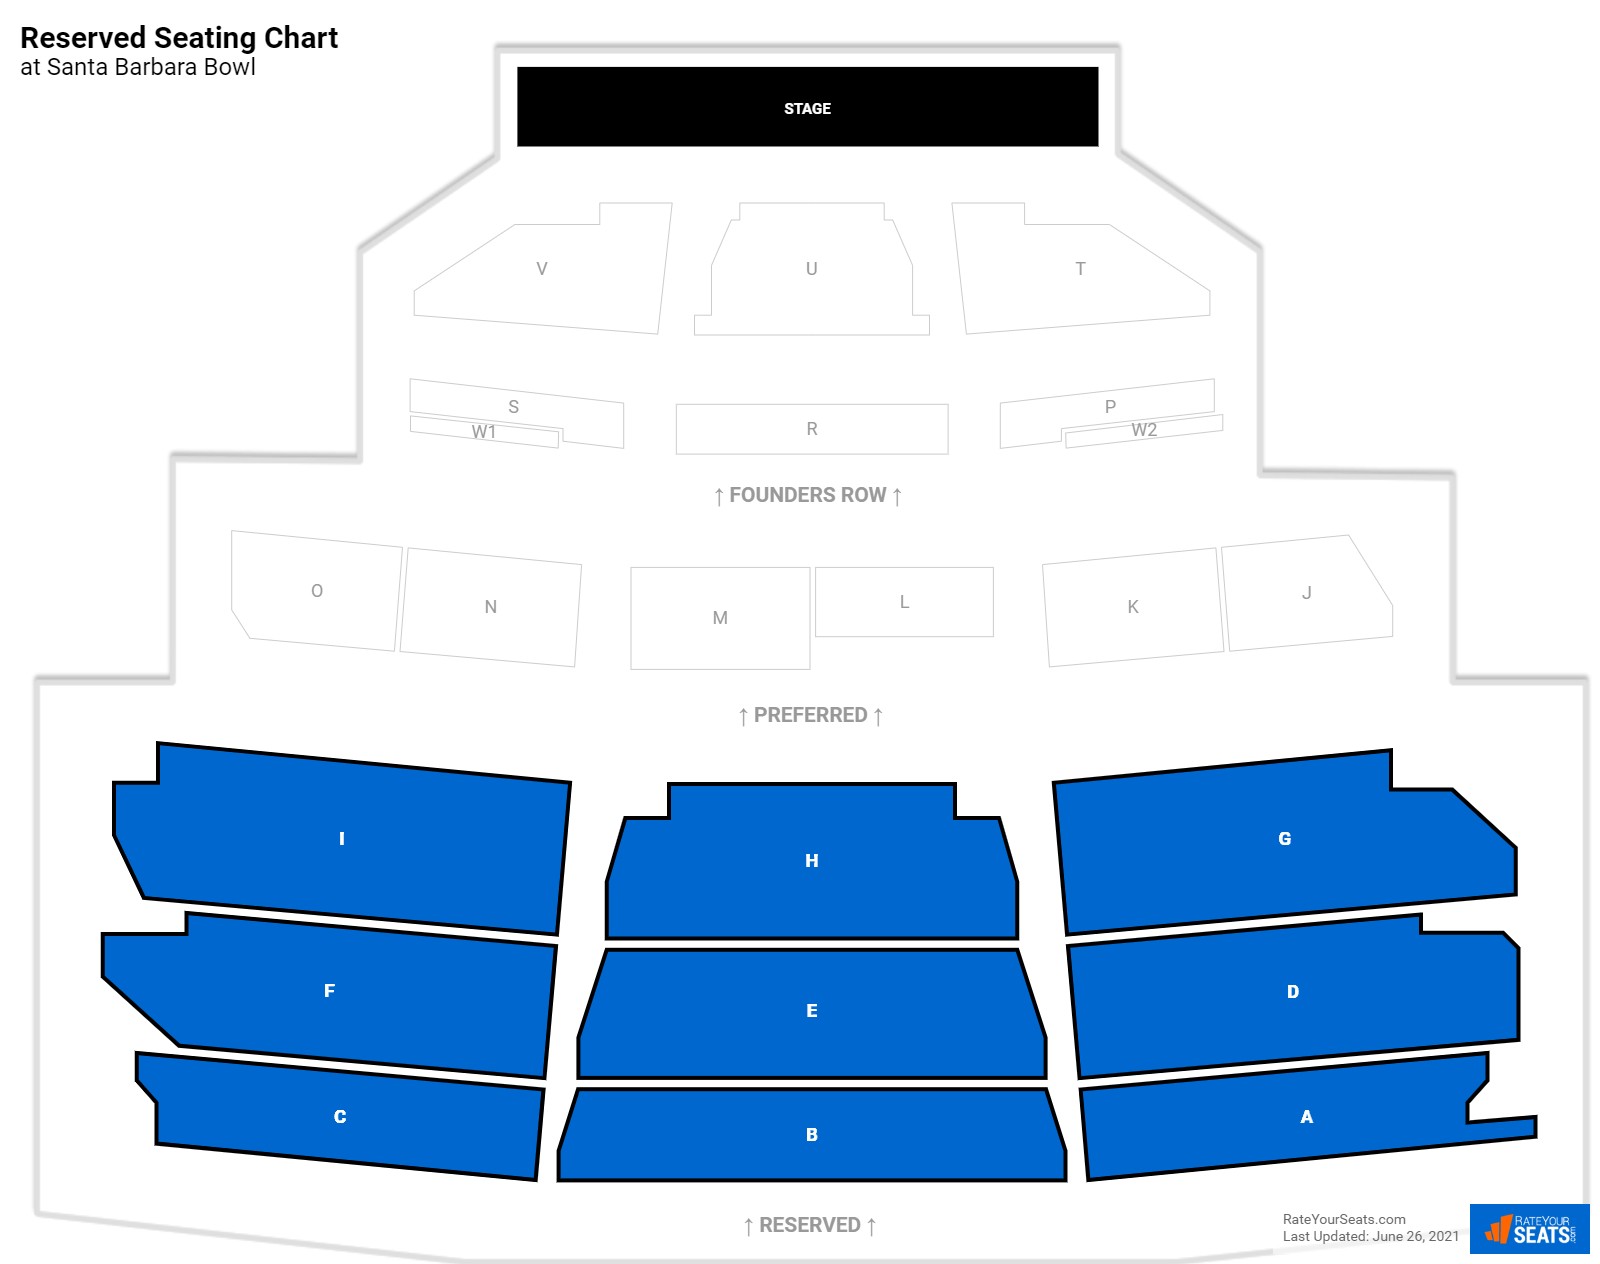 Concert Reserved Seating Chart at Santa Barbara Bowl